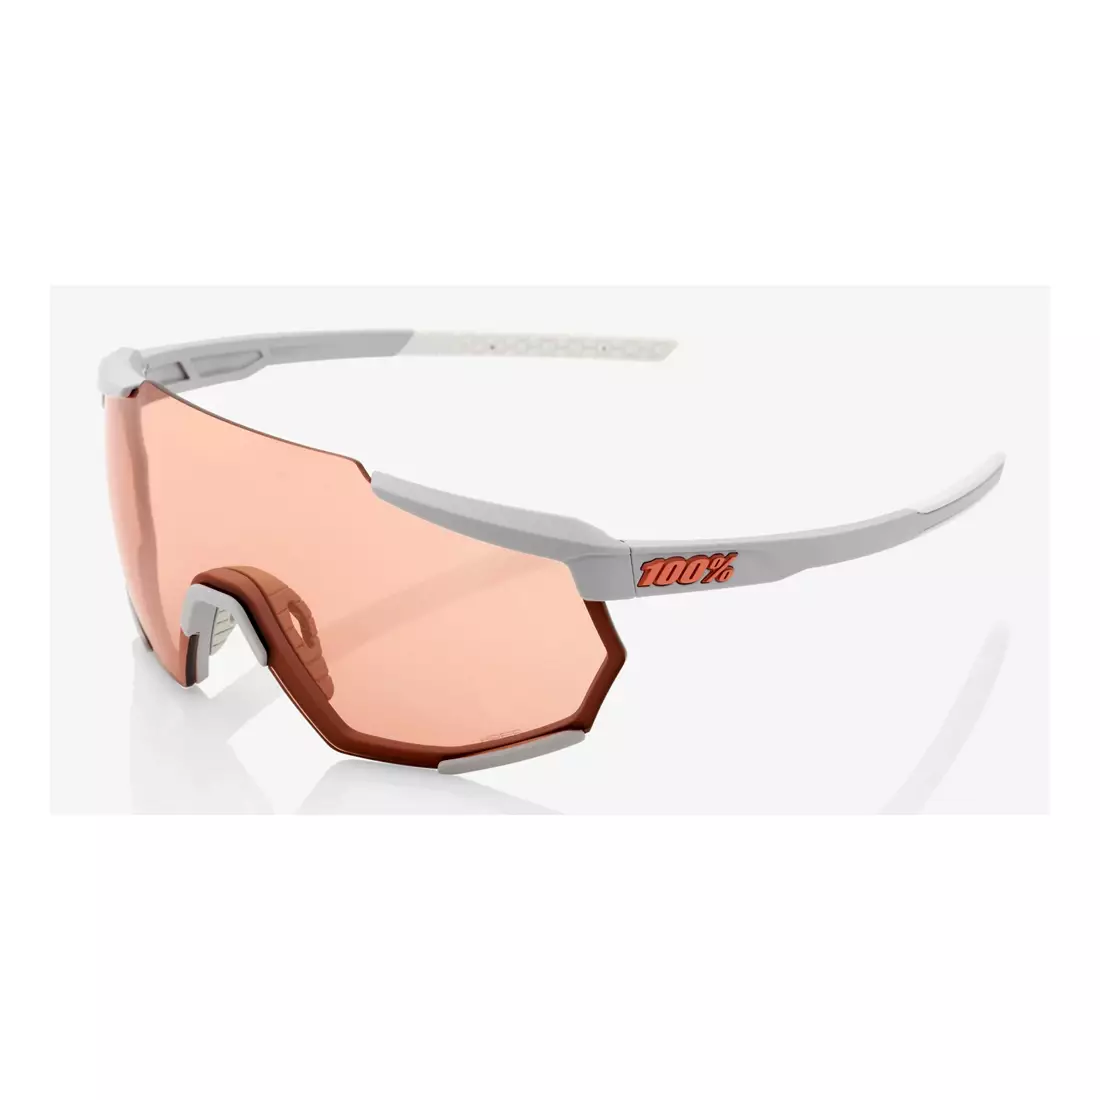 100% Sportbrille RACETRAP (Korallengläser, LT 52% + klare Gläser, LT 93%) soft tact stone grey STO-61037-289-79